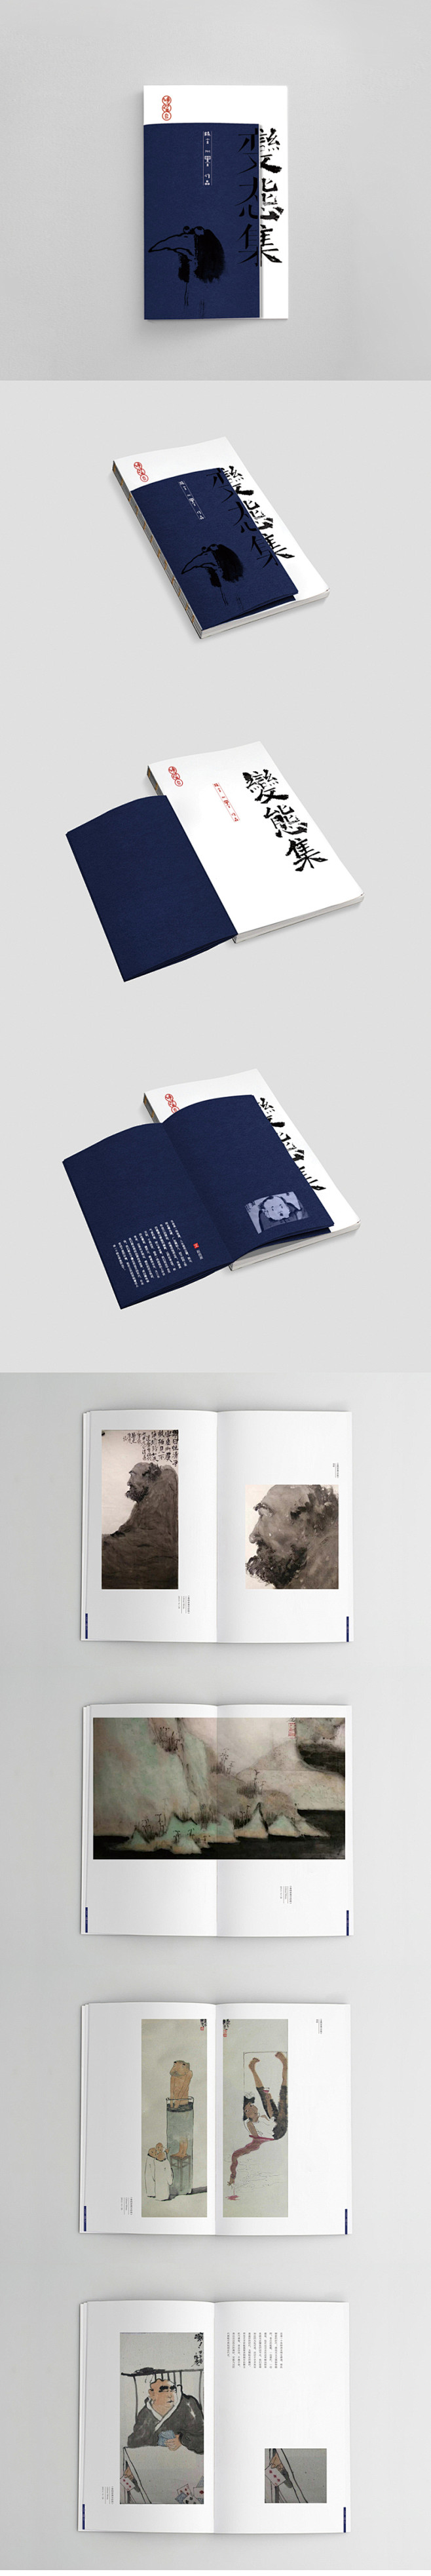 《变态集》画册设计 - 视觉中国设计师社...